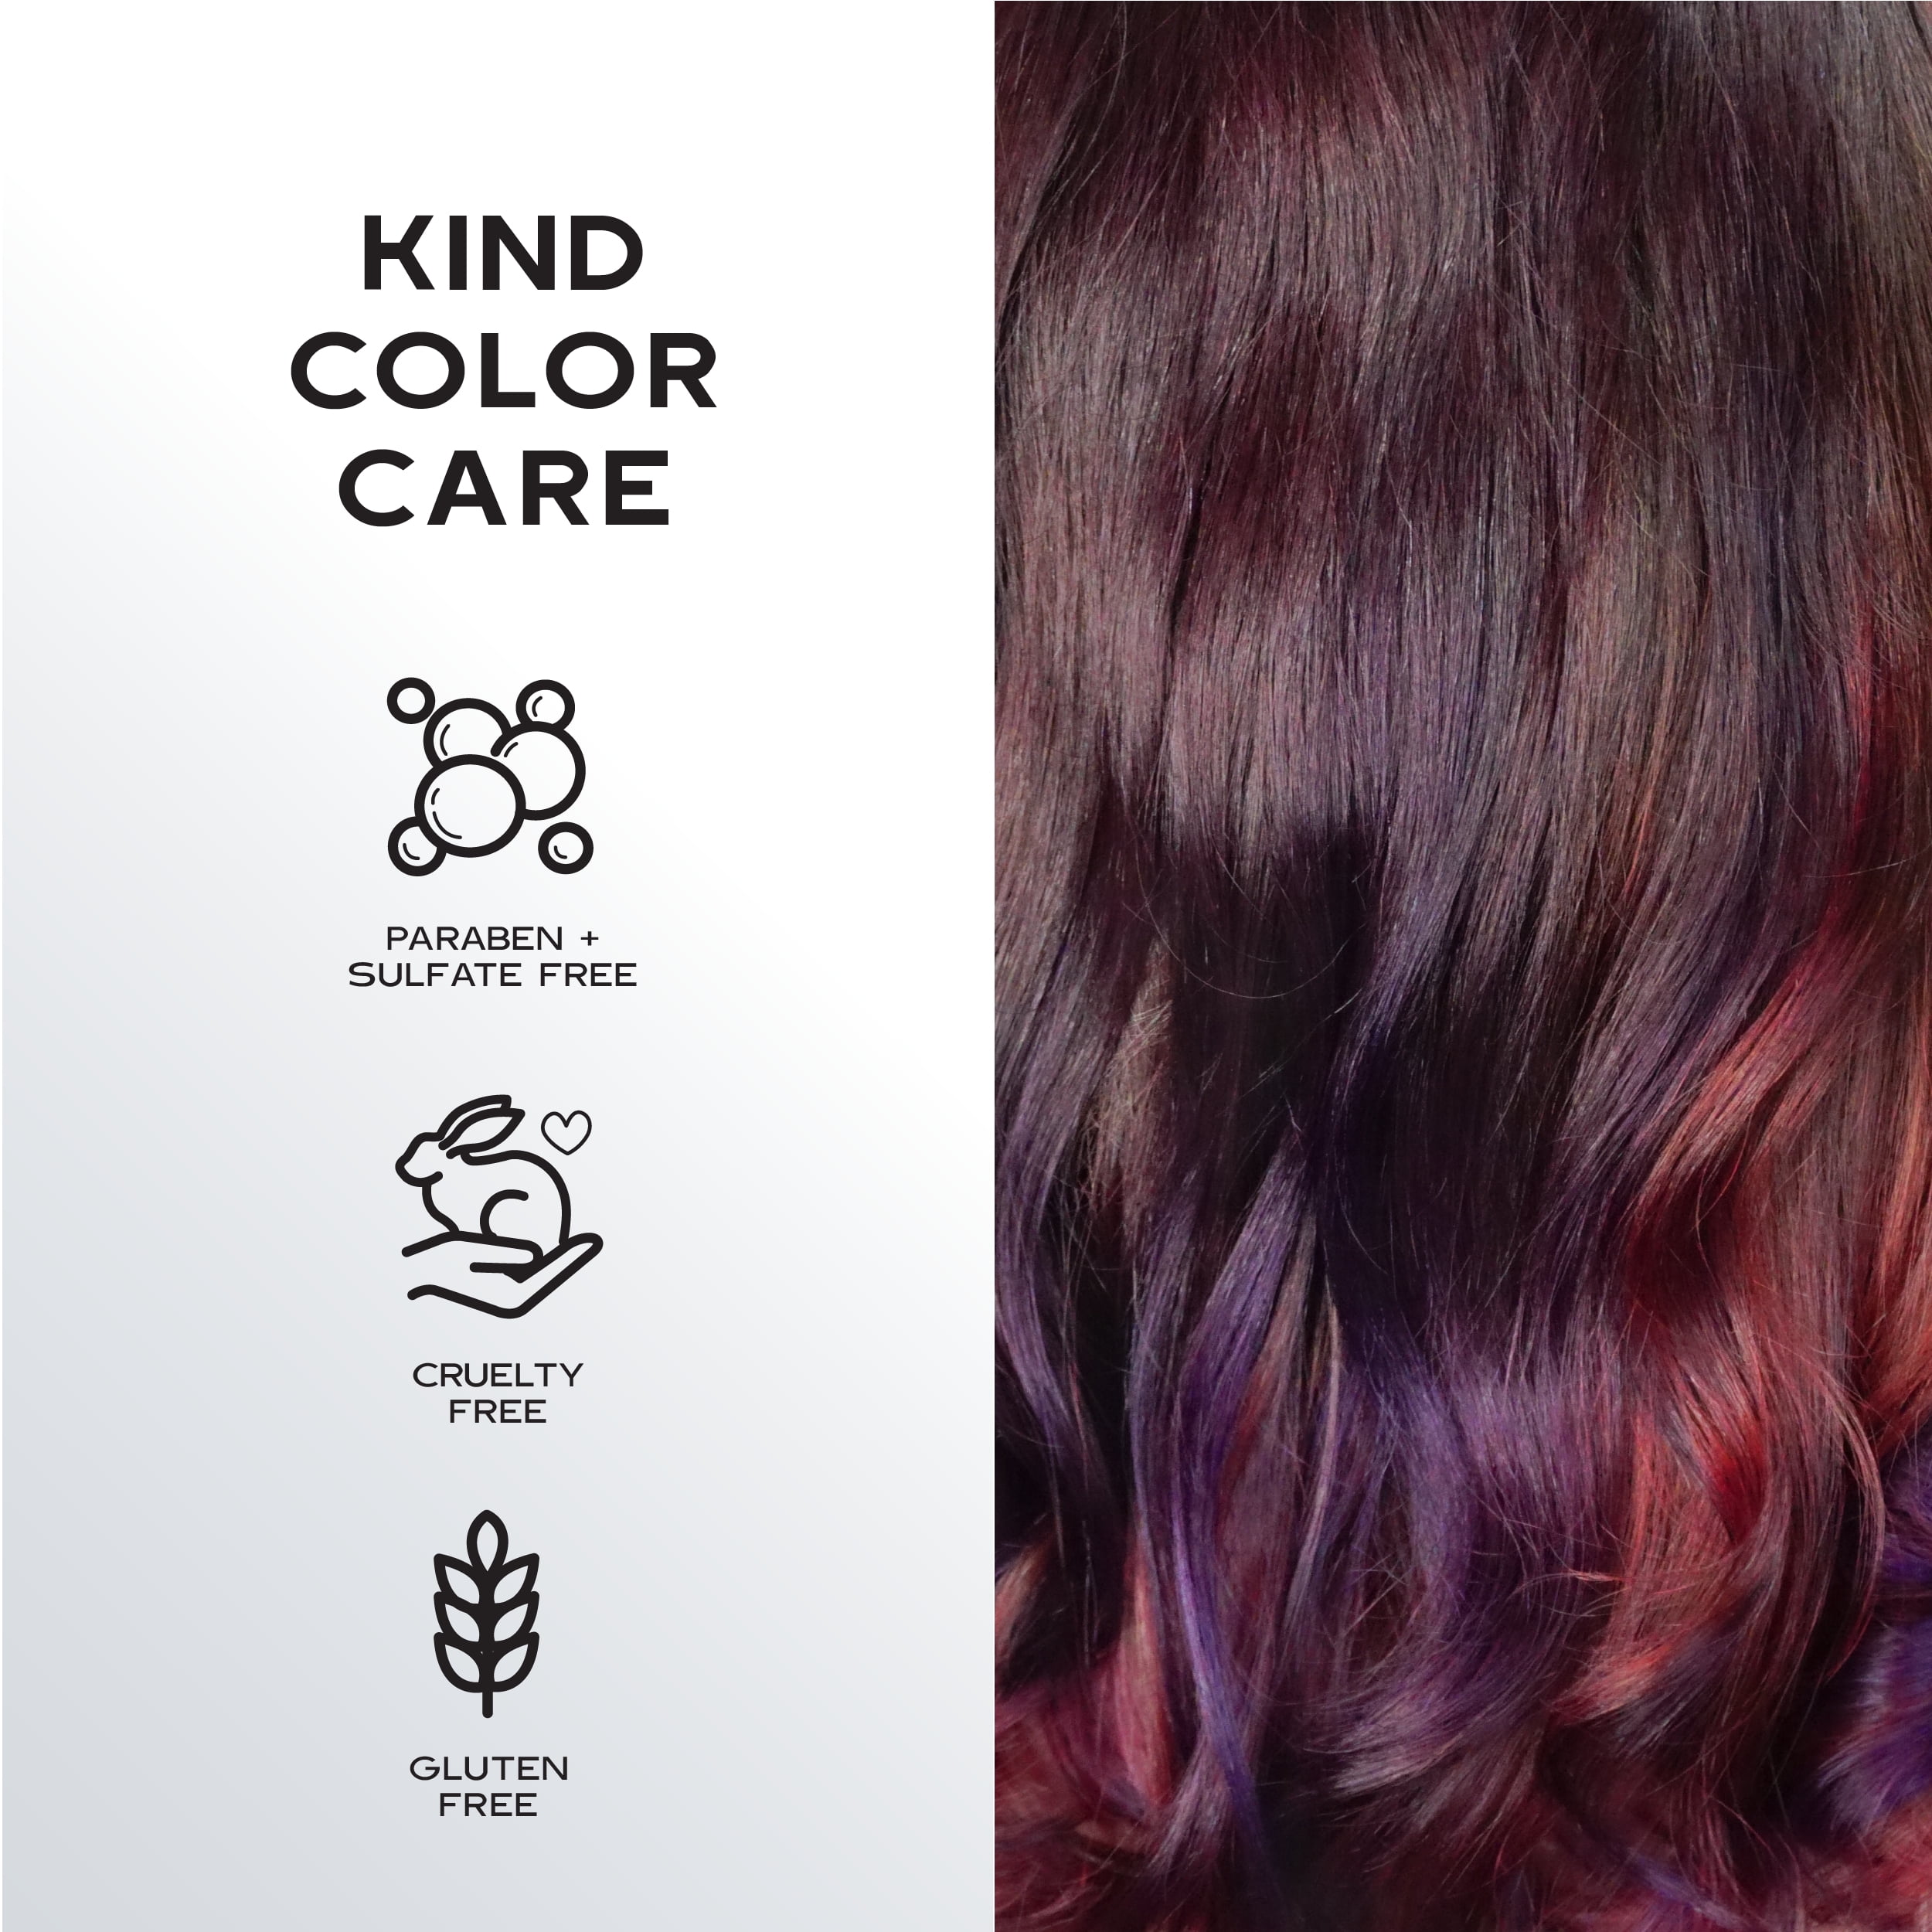 Keracolor Clenditioner for Brunettes Hair Dye, Rose Gold, 12 fl oz